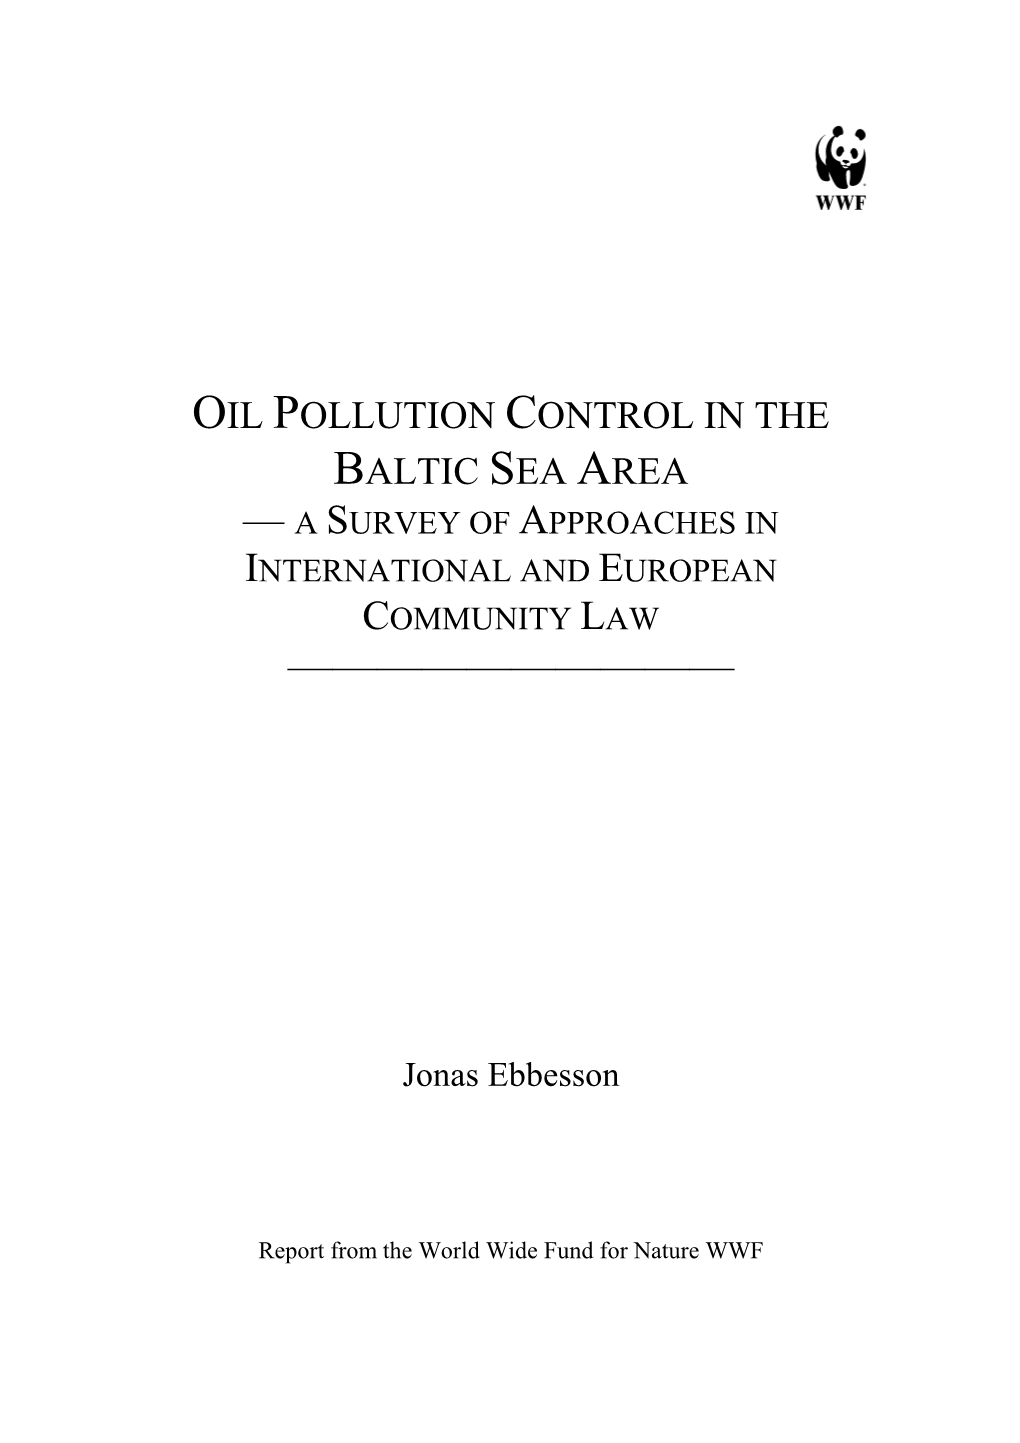 Wwf — Oil Pollution Control in the Baltic Sea Area